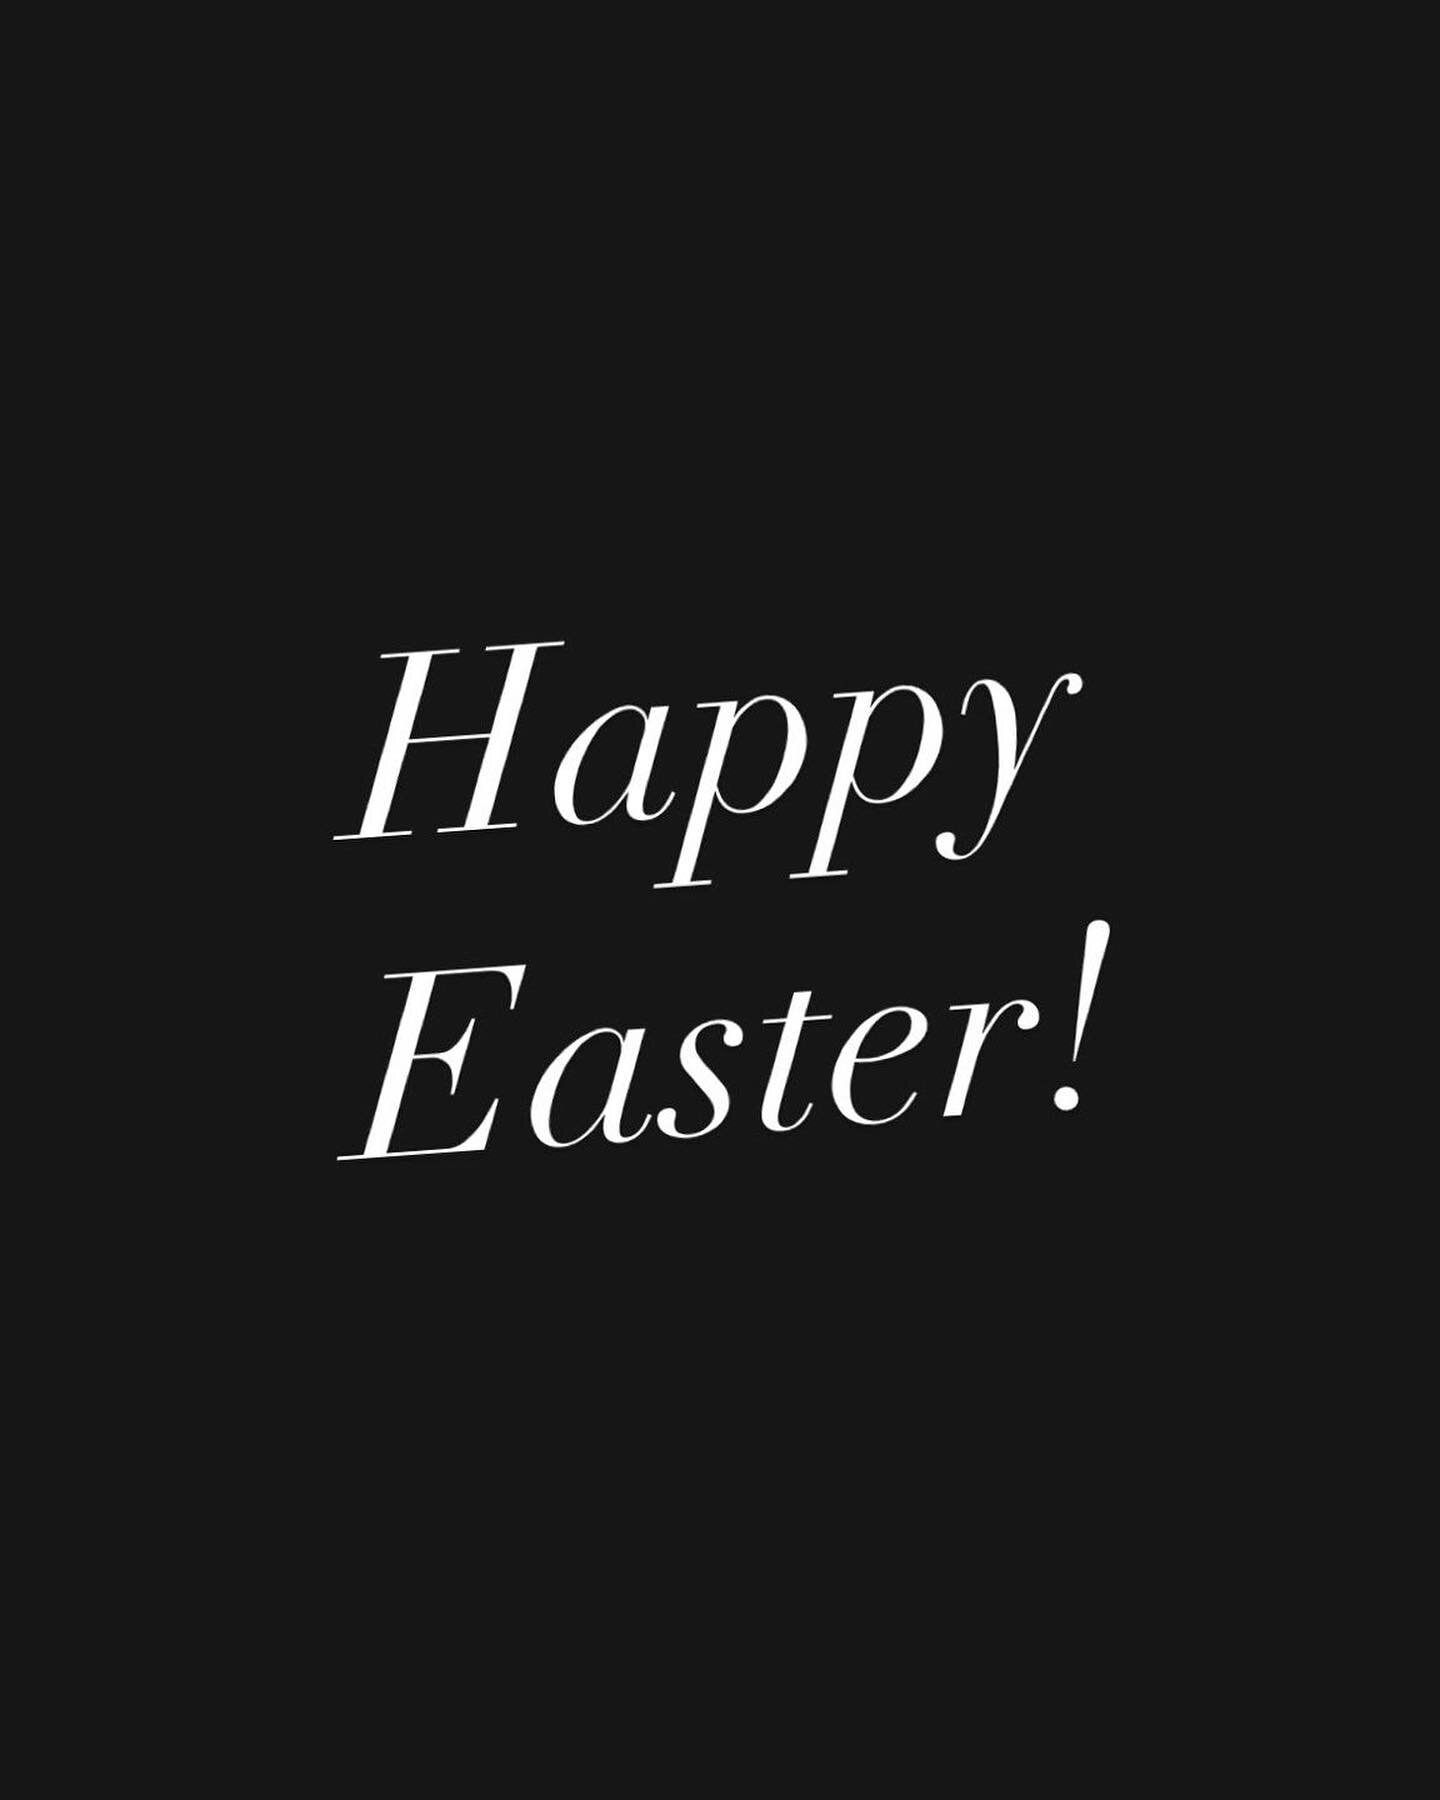 #easter #happy #happyeaster #jesus #blessings